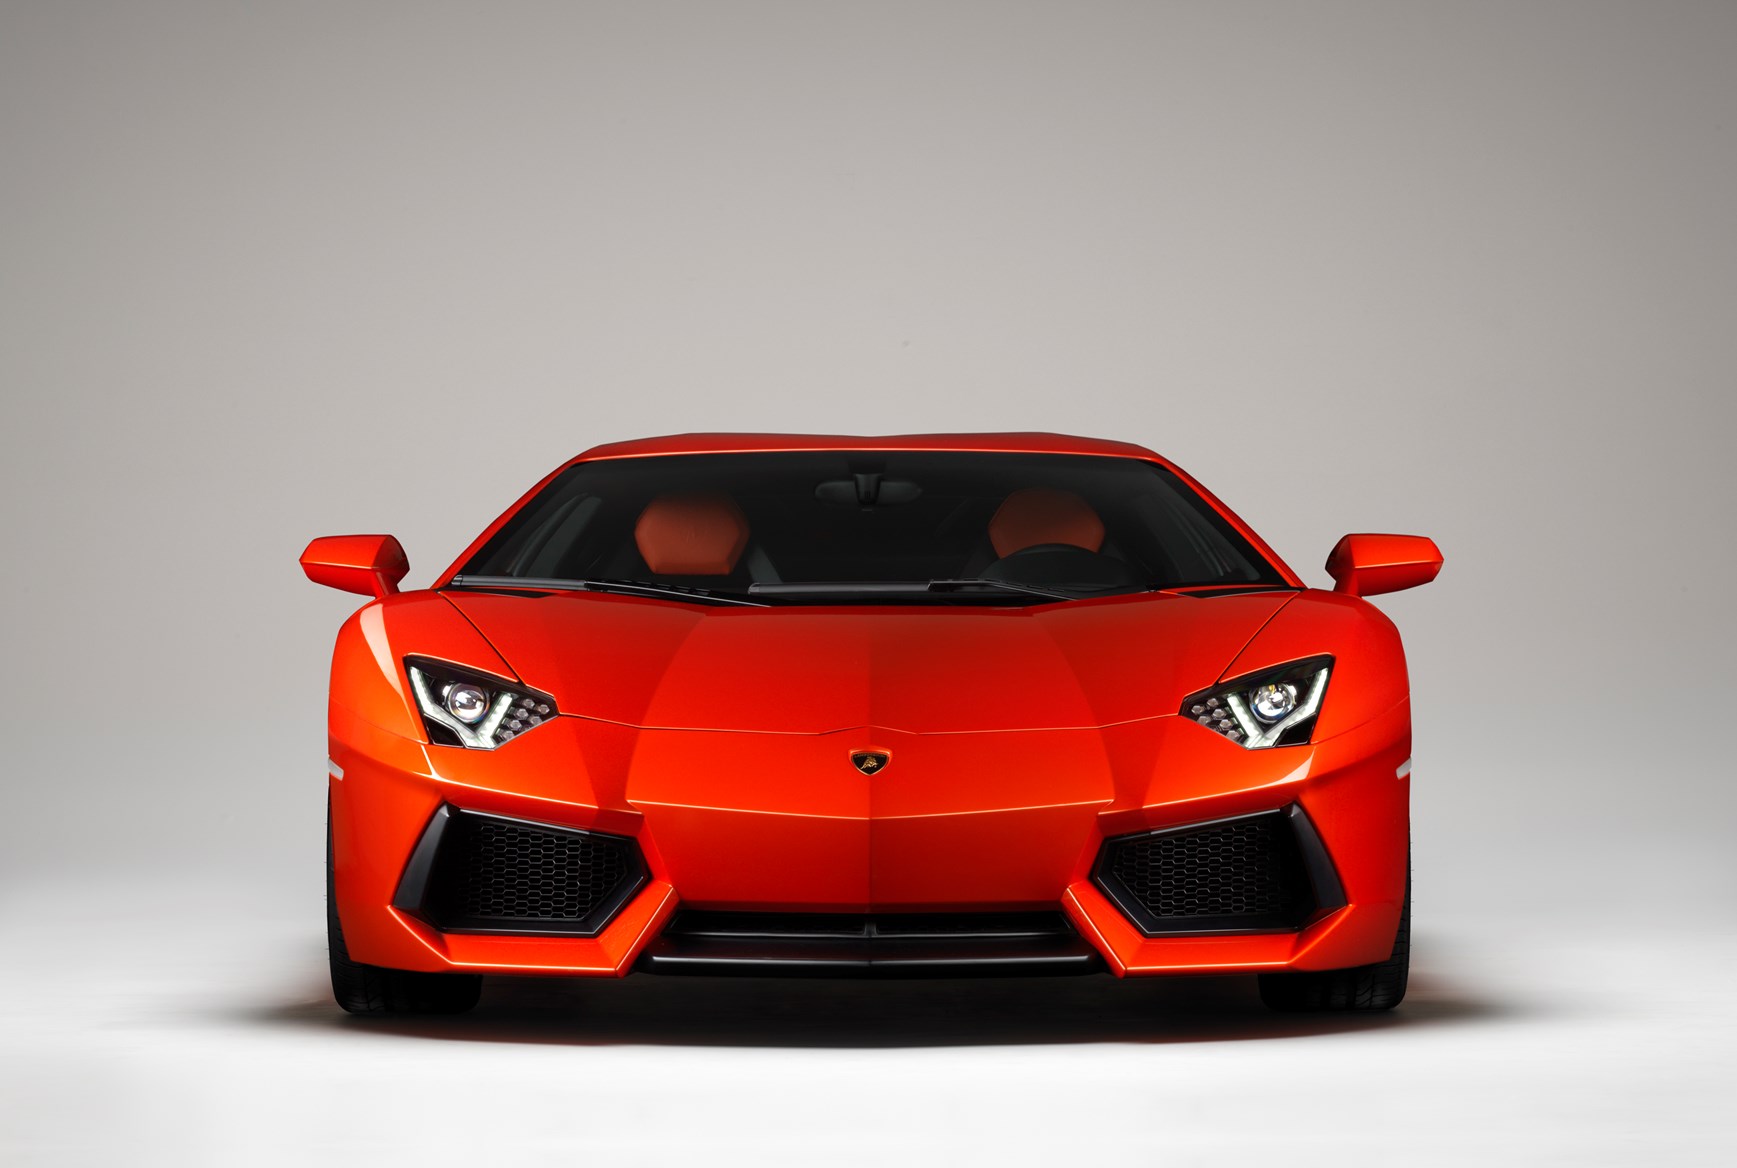 Lamborghini Aventador Backgrounds, Compatible - PC, Mobile, Gadgets| 1737x1168 px